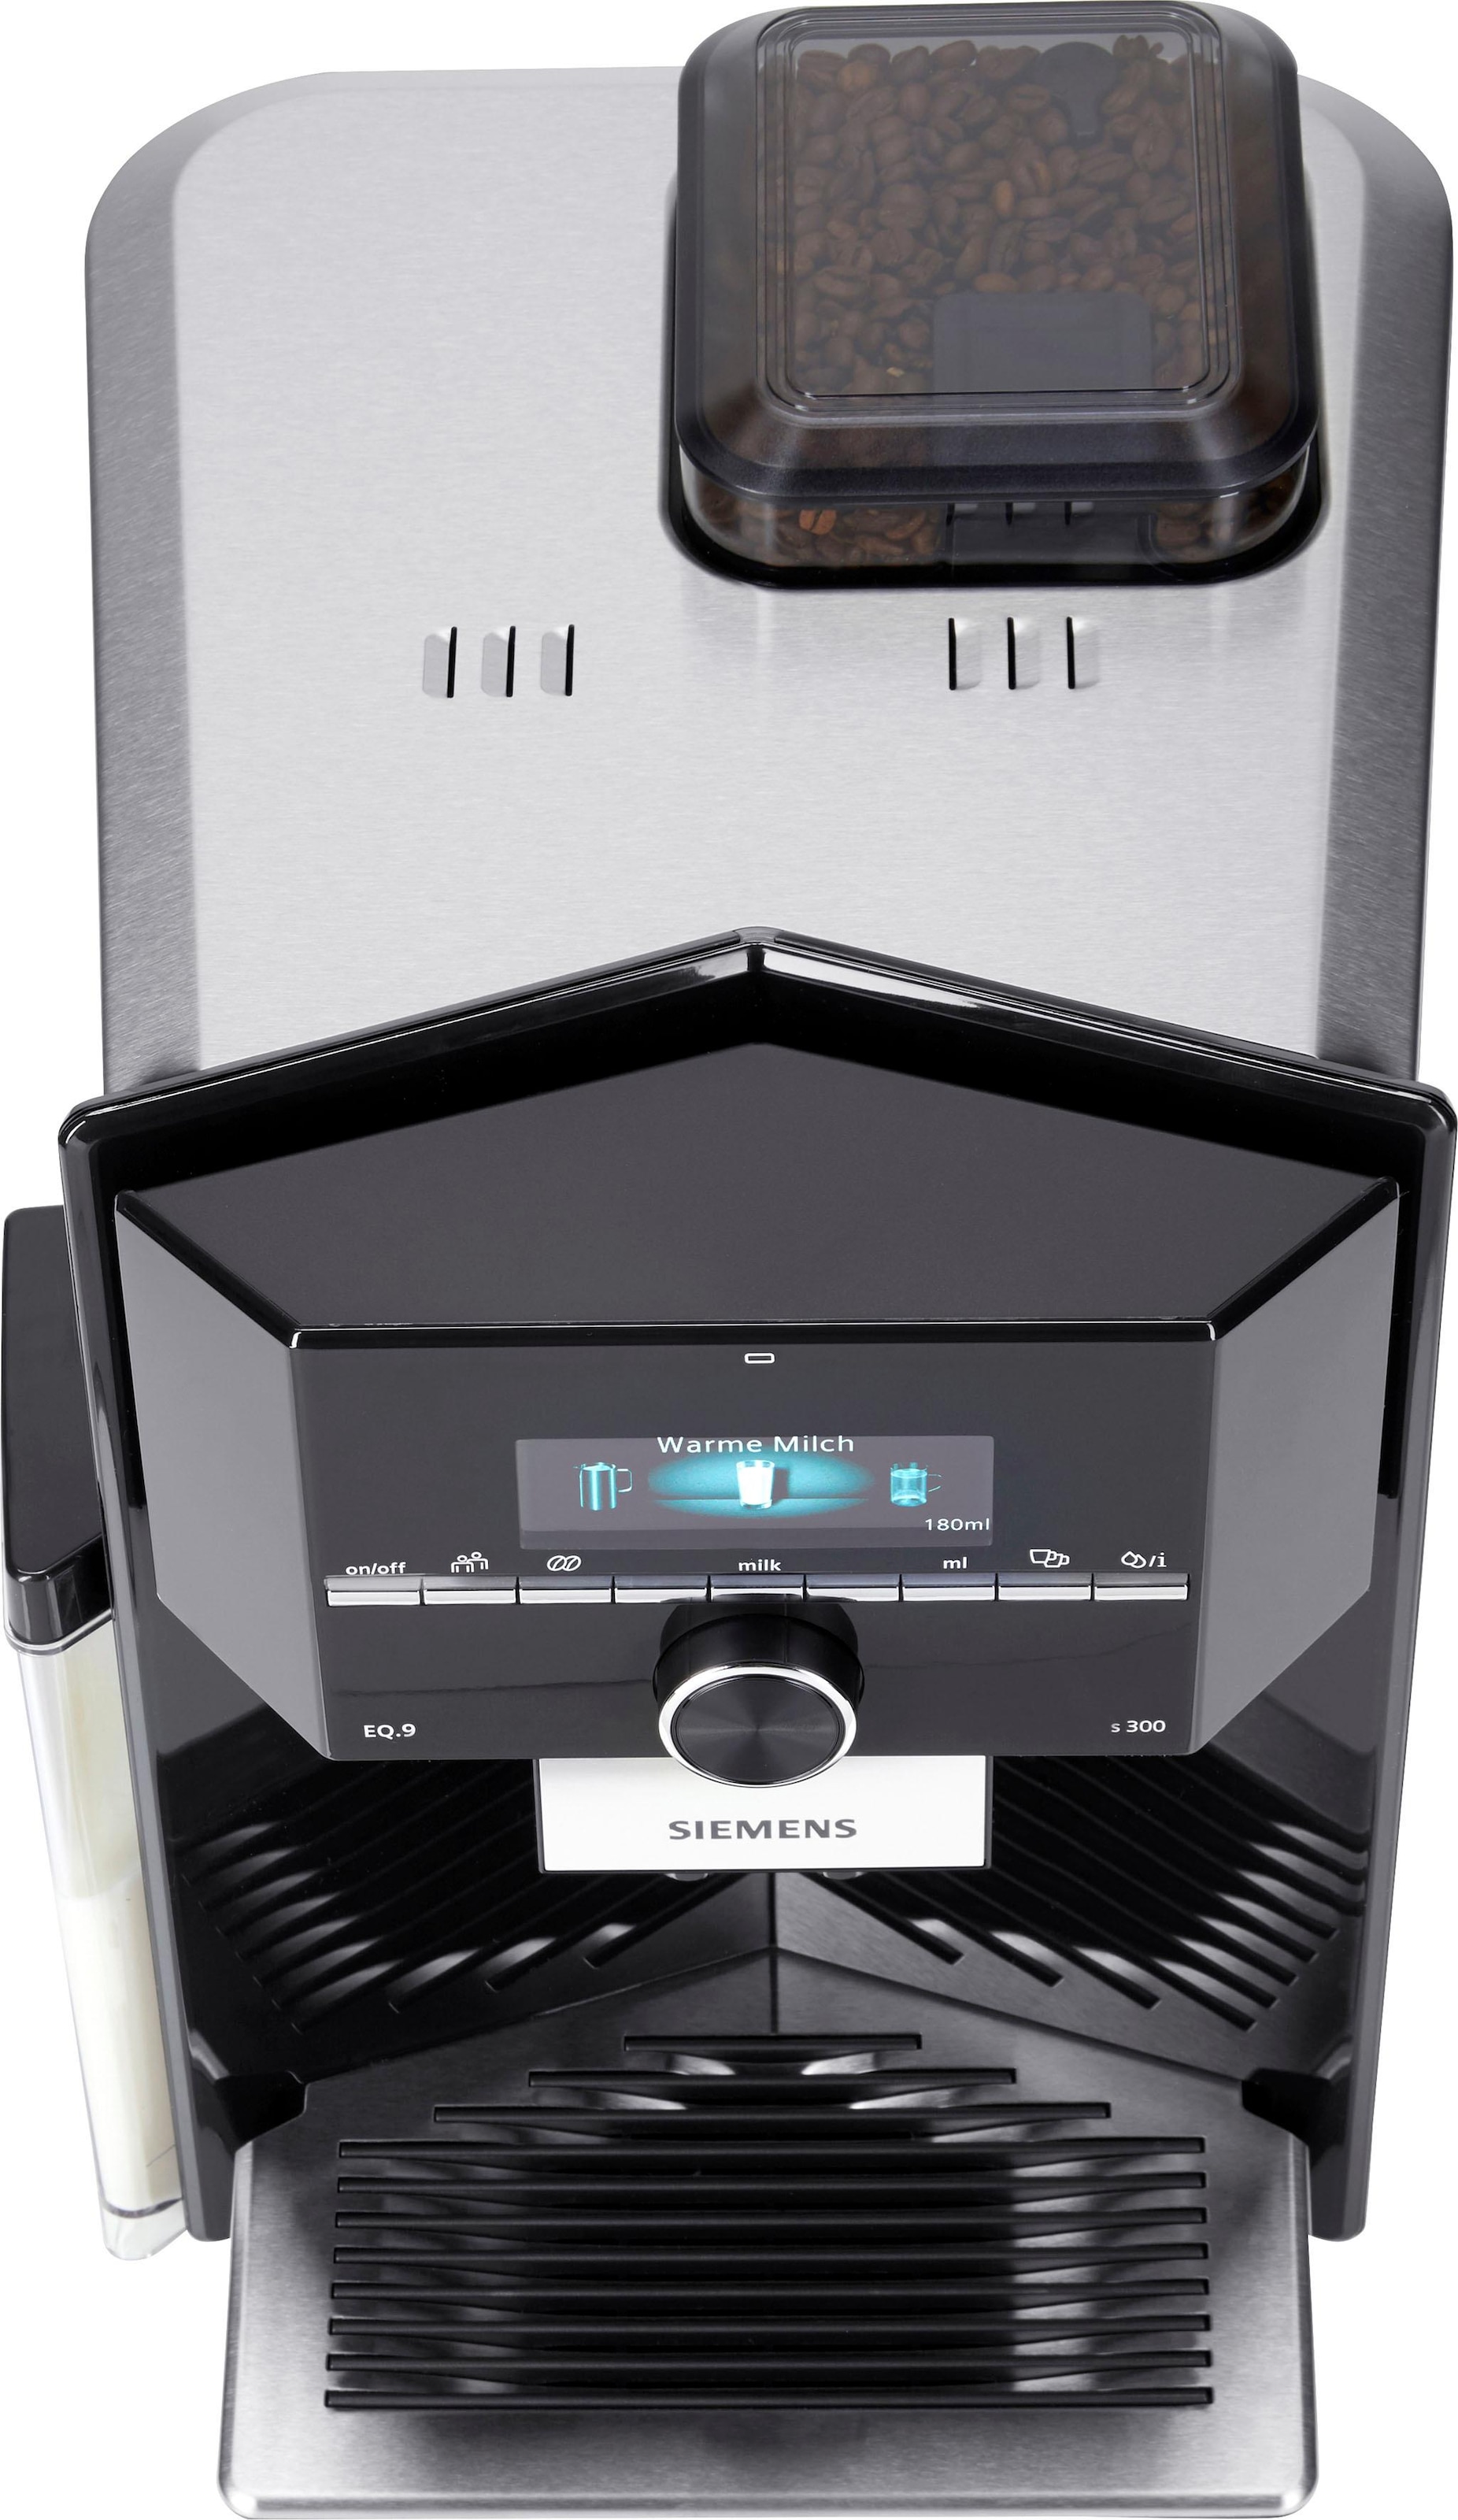 Raten Scheibenmahlwerk Tank, kaufen Kaffeevollautomat SIEMENS 2,3l auf EQ.9 TI923509DE, s300